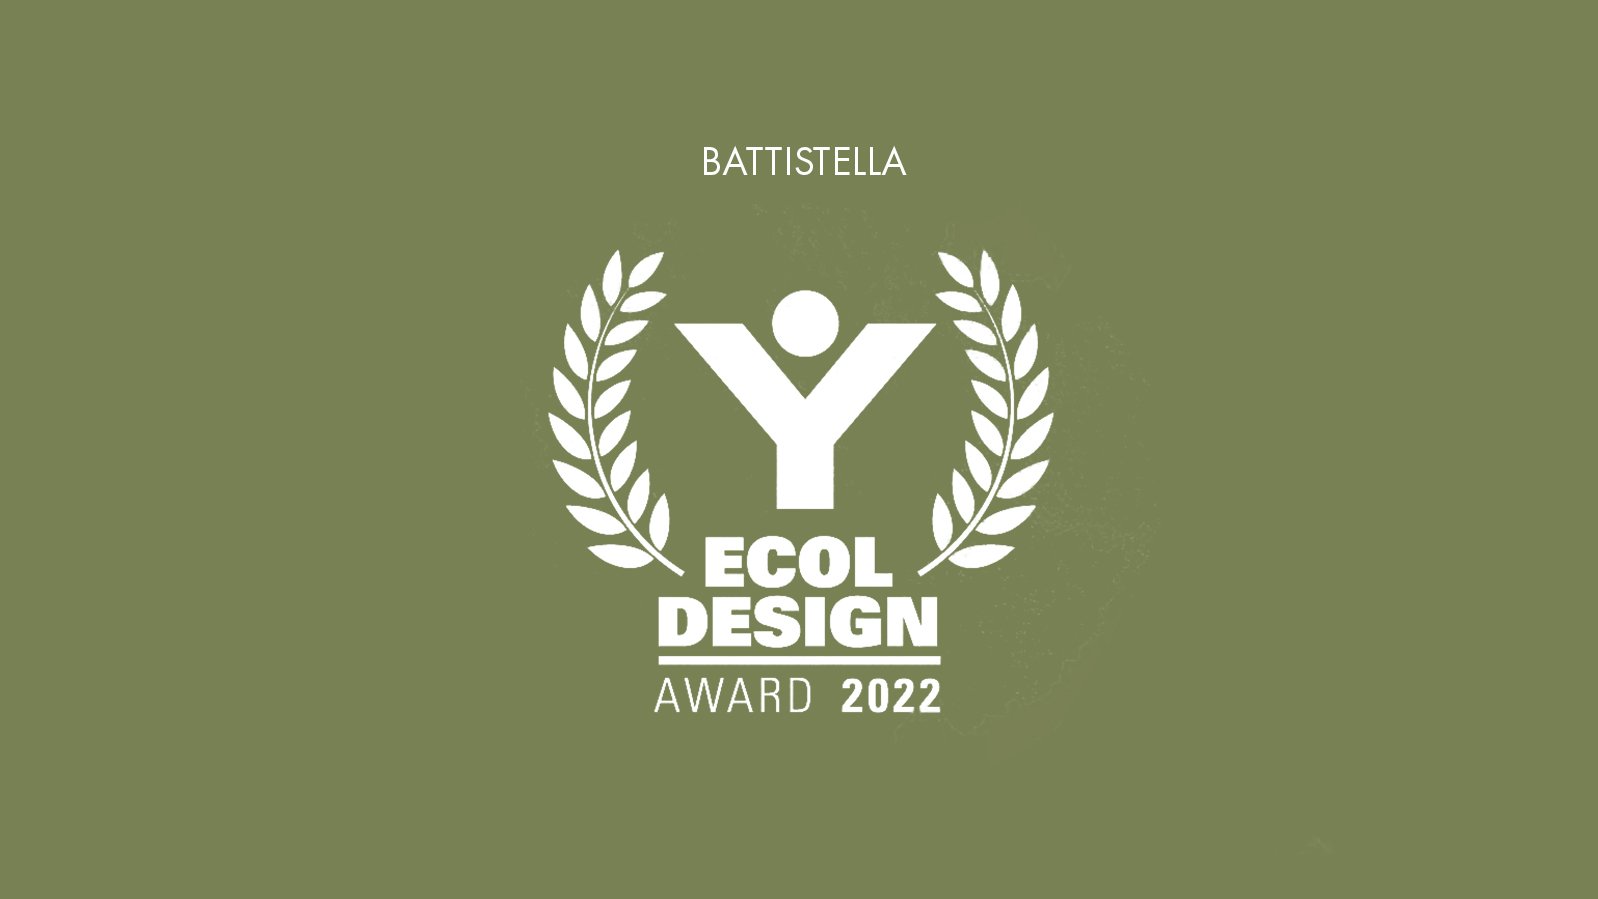 Recycla ha premiato Battistella con l'ECOL DESIGN AWARD